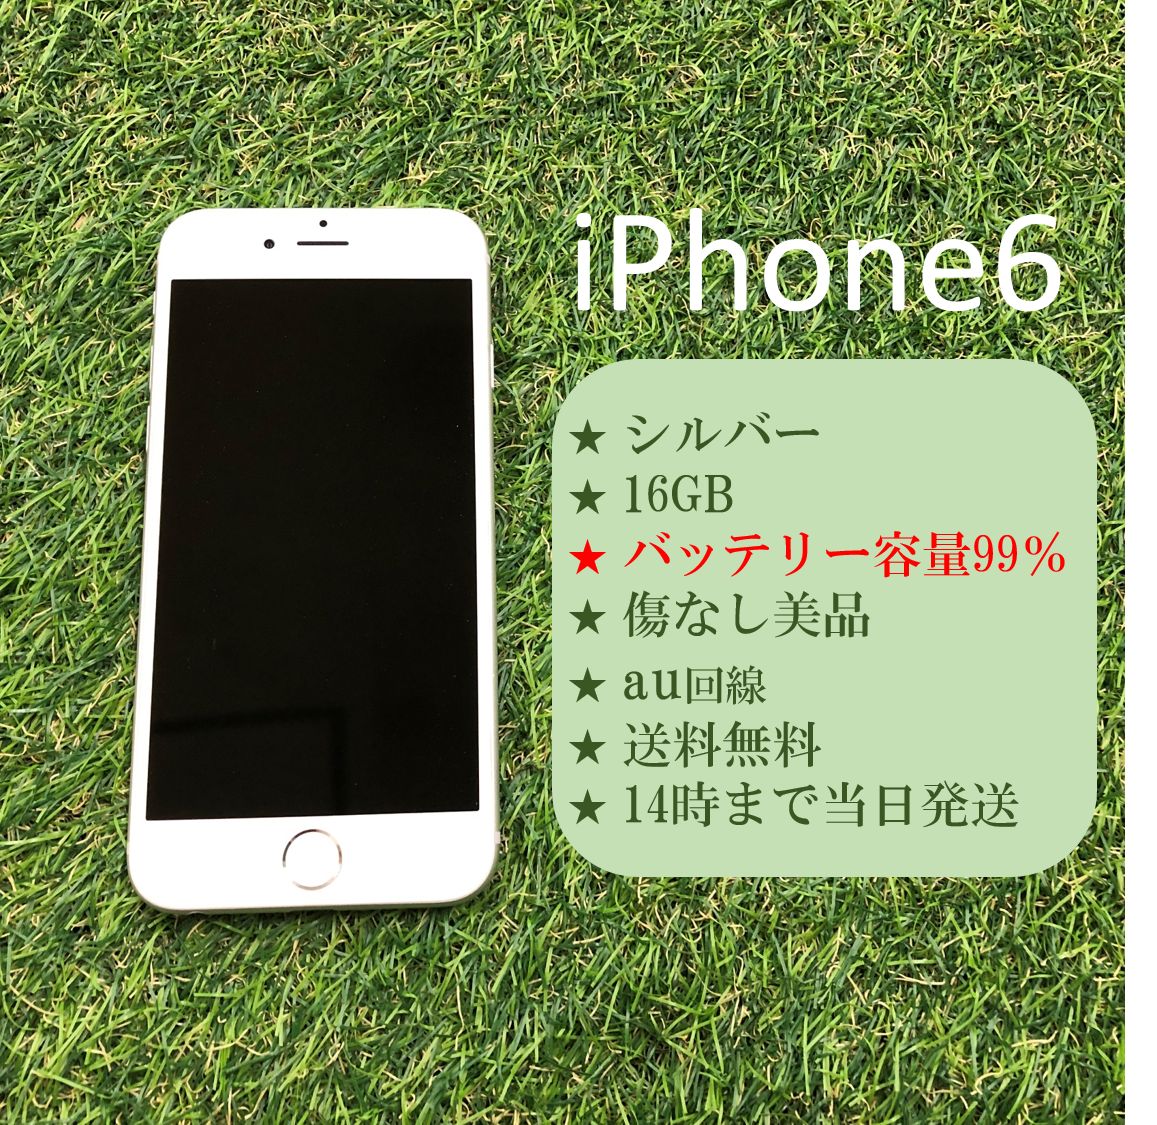 美品 iPhone6 本体 16GB シルバー au回線 バッテリー99% - メルカリ